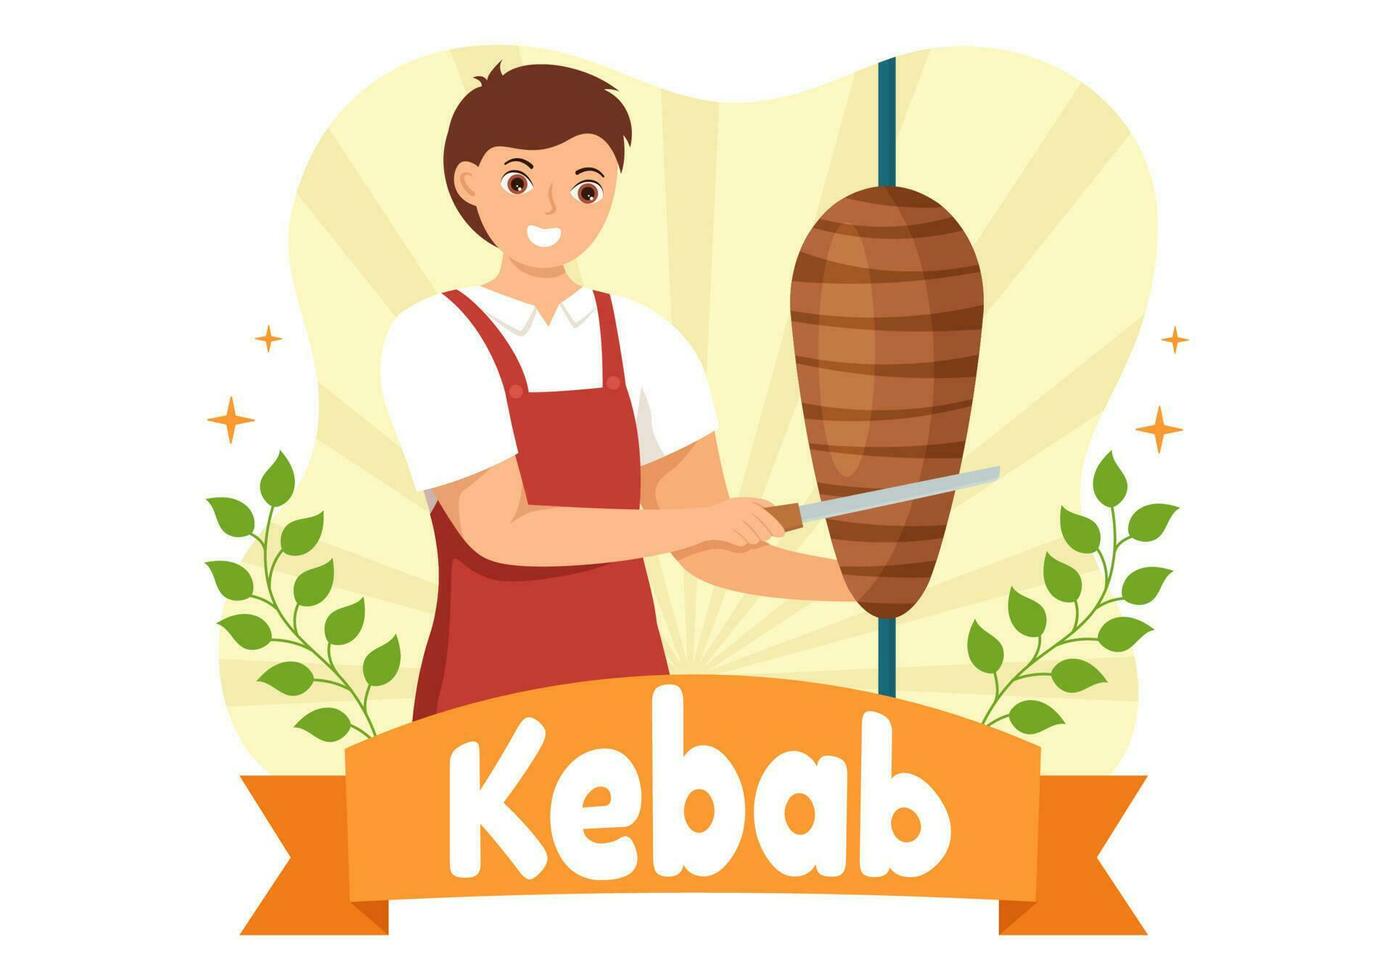 Kebab Vektor Illustration mit Füllung Hähnchen oder Rindfleisch Fleisch, Salat und Gemüse im Brot Tortilla wickeln im eben Karikatur Hand gezeichnet Vorlagen